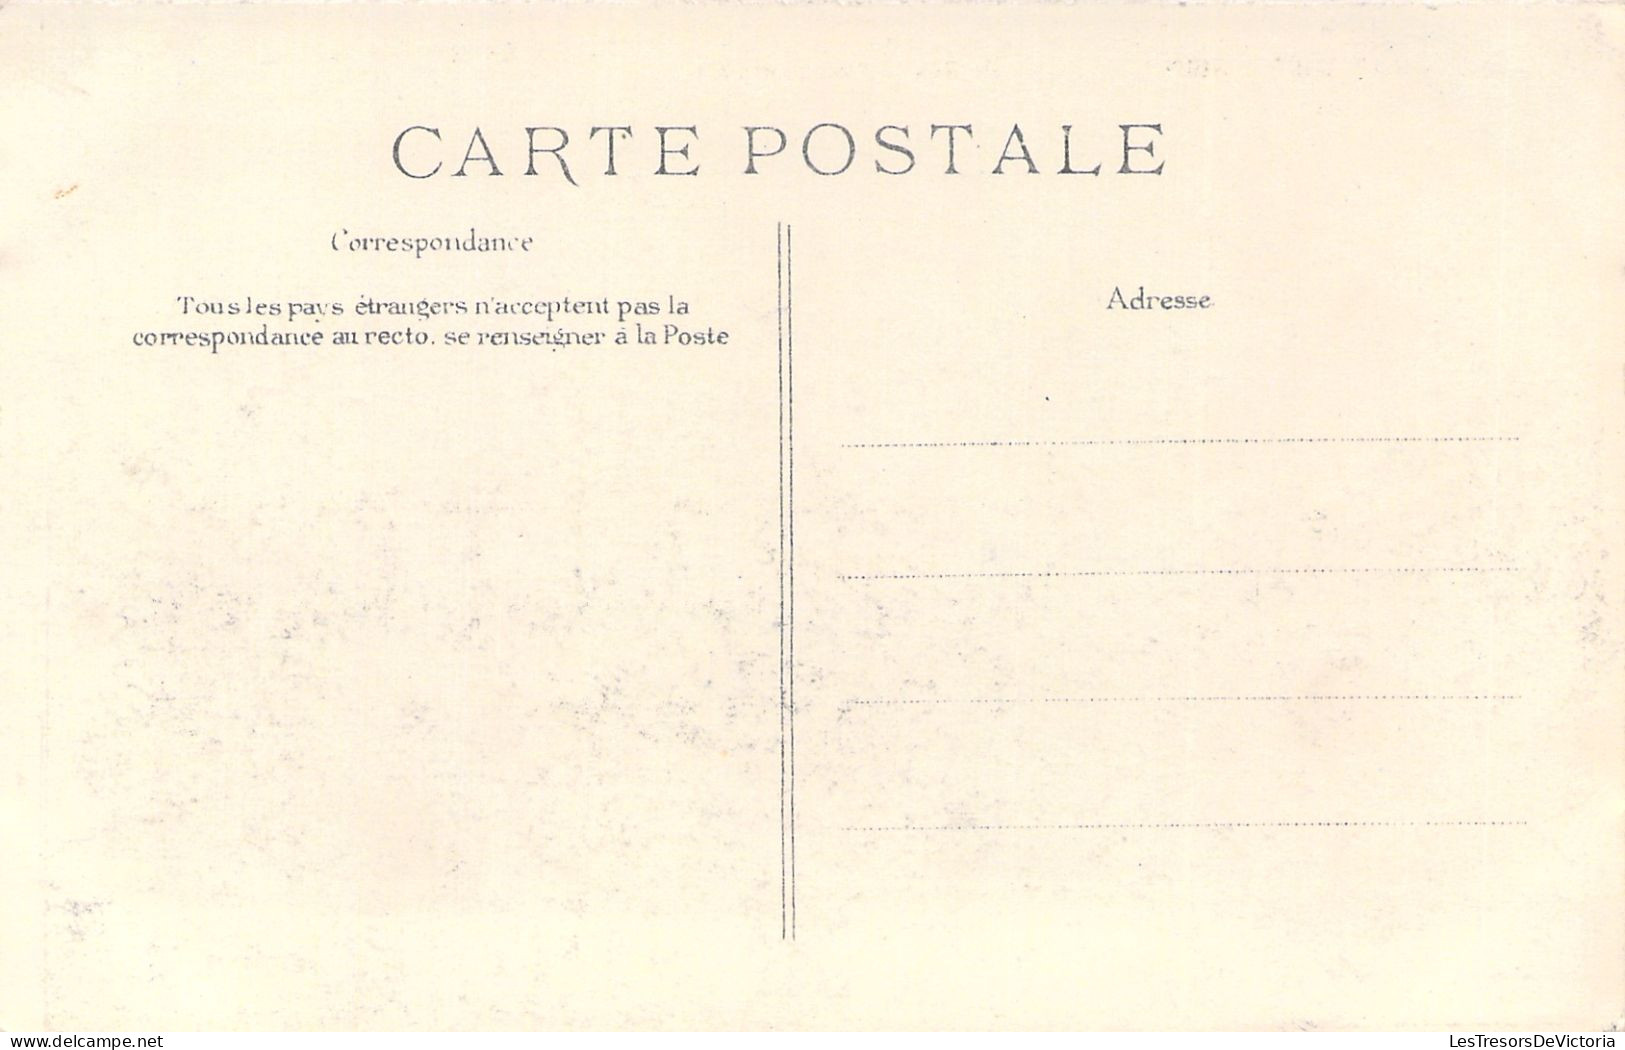 FRANCE - Crue De La Seine - Paris - Pont D'austerlitz - Janvier 1910 - Animé - Carte Postale Ancienne - La Seine Et Ses Bords